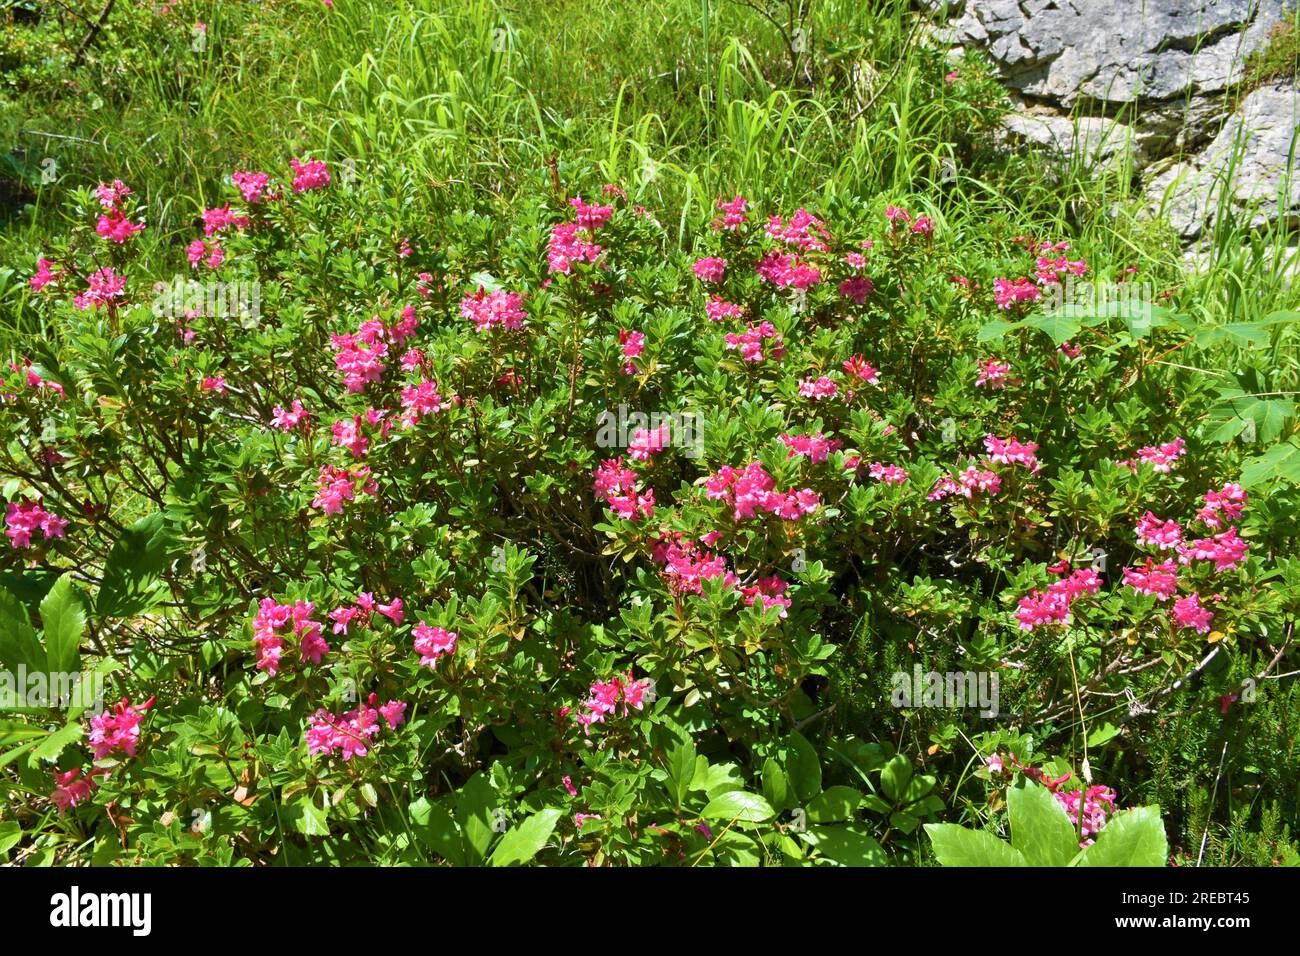 Pink flowering alpenrose (Rhododendron hirsutum) bush Stock Photo